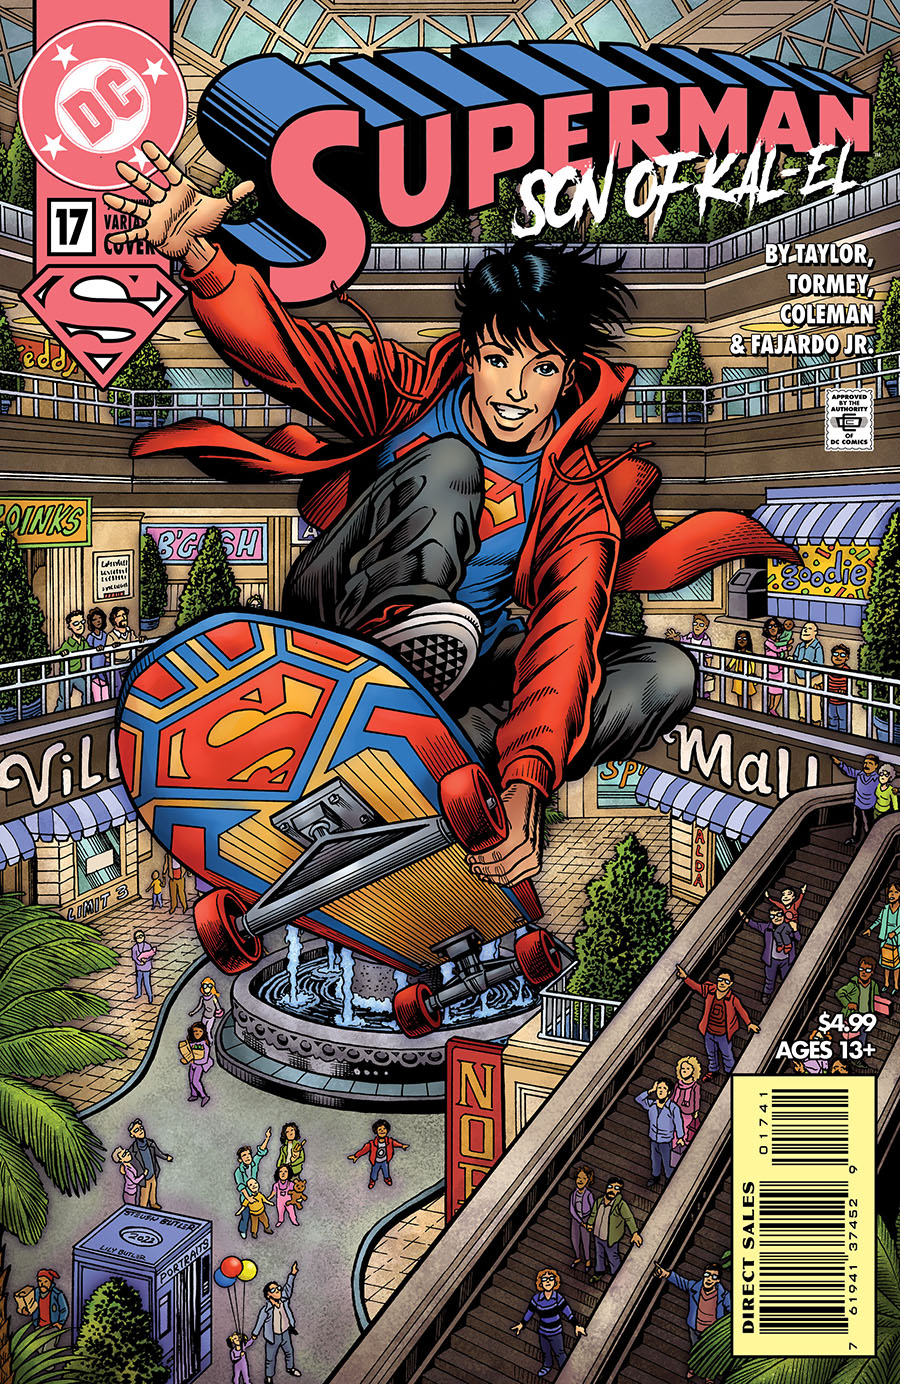 Superman Son Of Kal-El #17 Cover C Variant Steven Butler 90s Cover Month Card Stock Cover (Kal-El Returns Part 4)